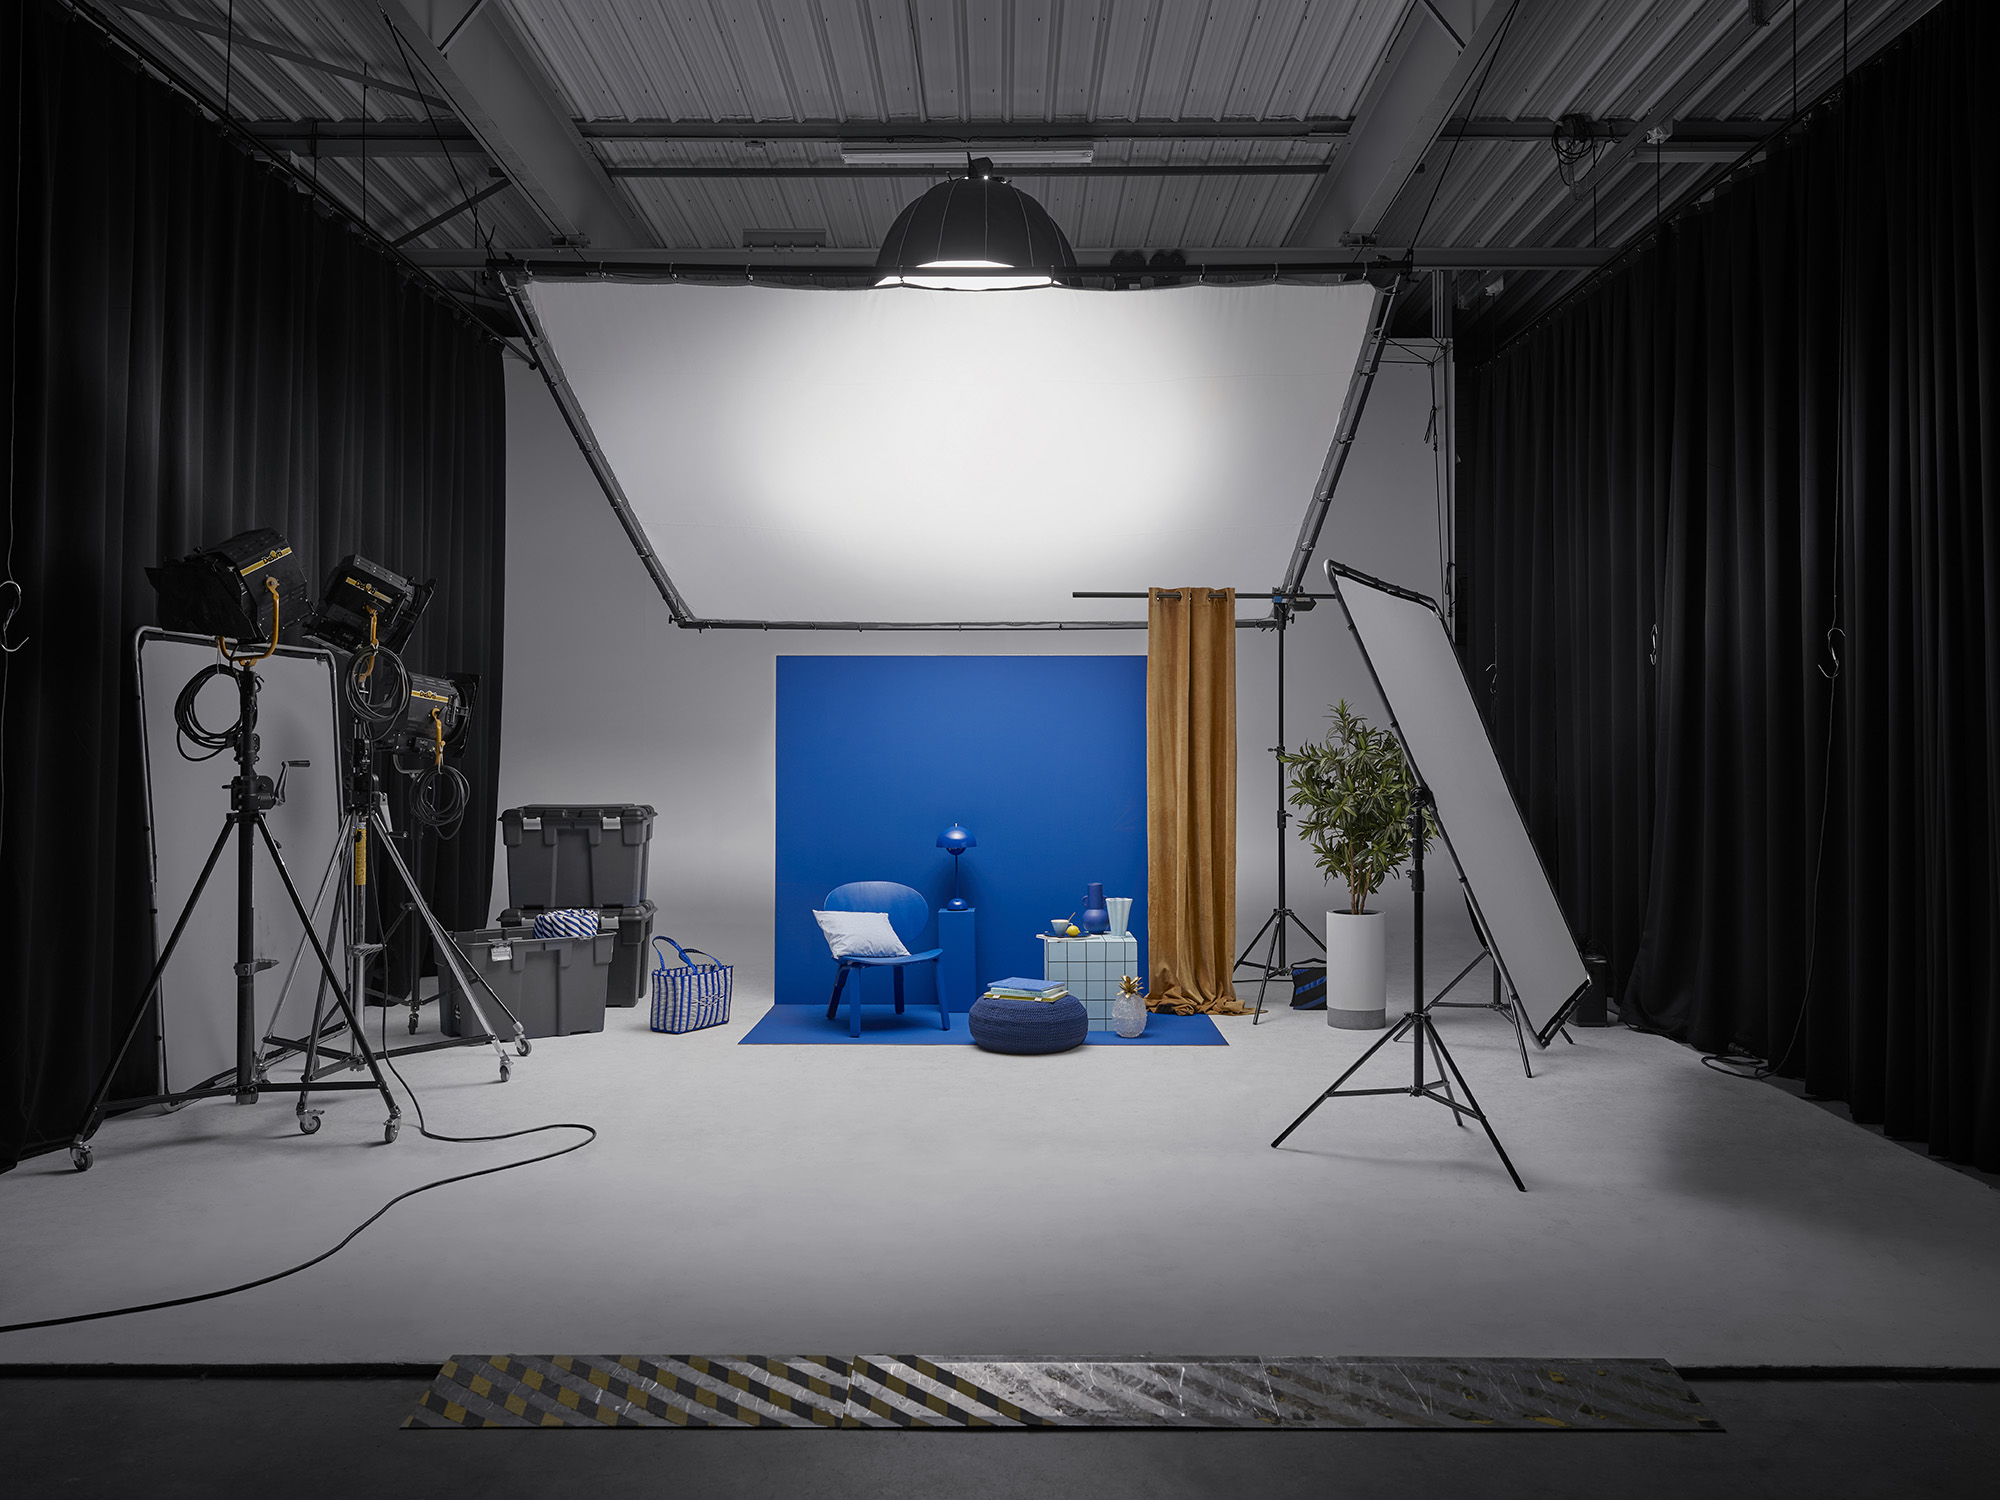 Décors dans un espace cyclo d'un studio de photographie. Du matériel photo un set design composé d'un fond principal lilas et d'accessoires de décoration : lampe bleue, rideau ocre, chaise colorée ...